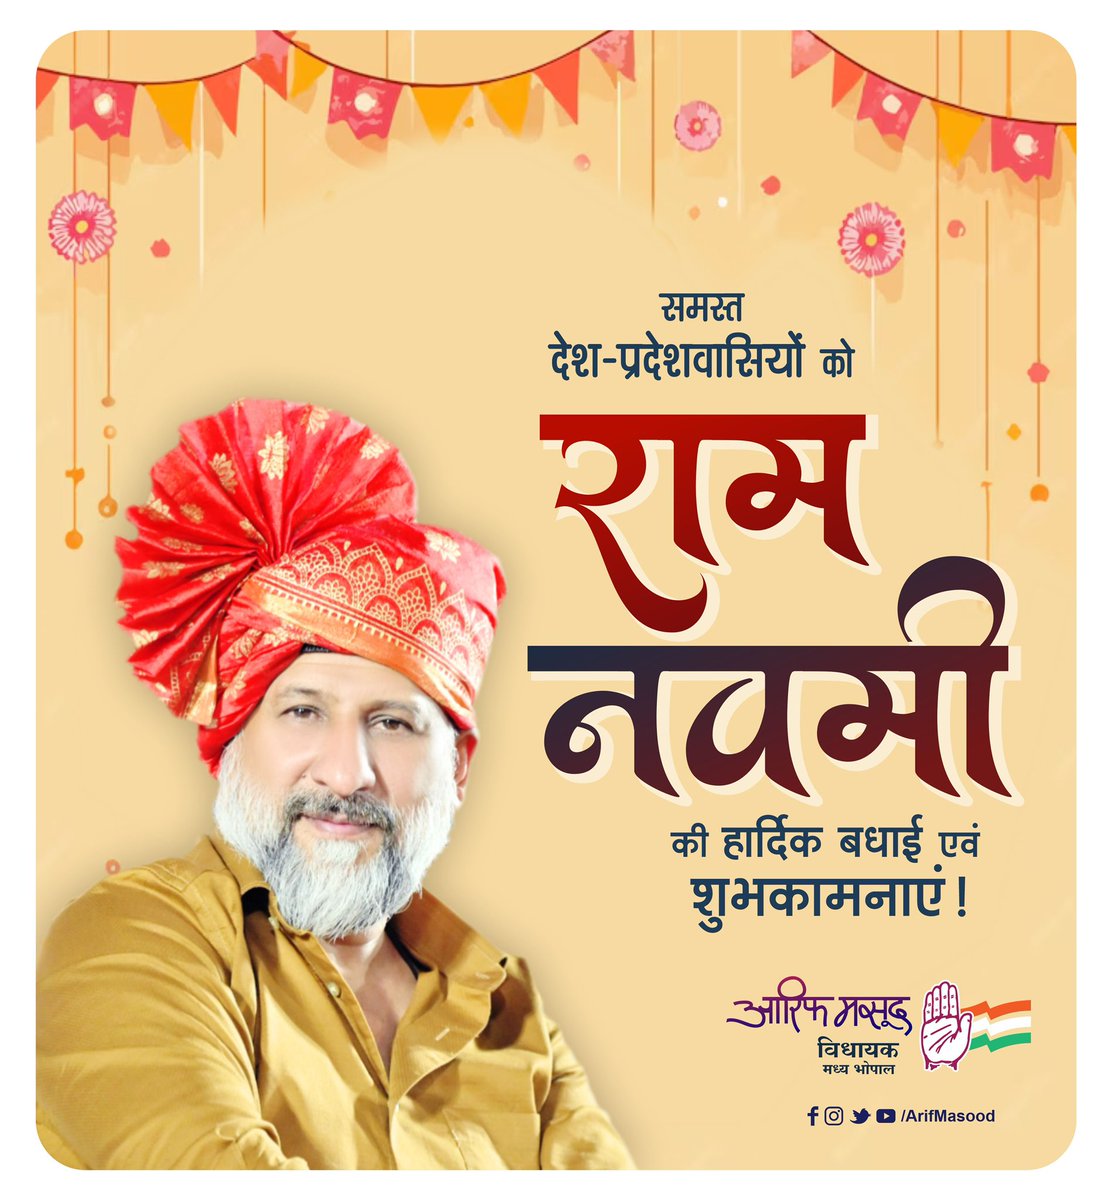 समस्त देश-प्रदेशवासियों को राम नवमी की हार्दिक बधाई एवं शुभकामनाएं ! #HappyRamaNavami #AarifMasood